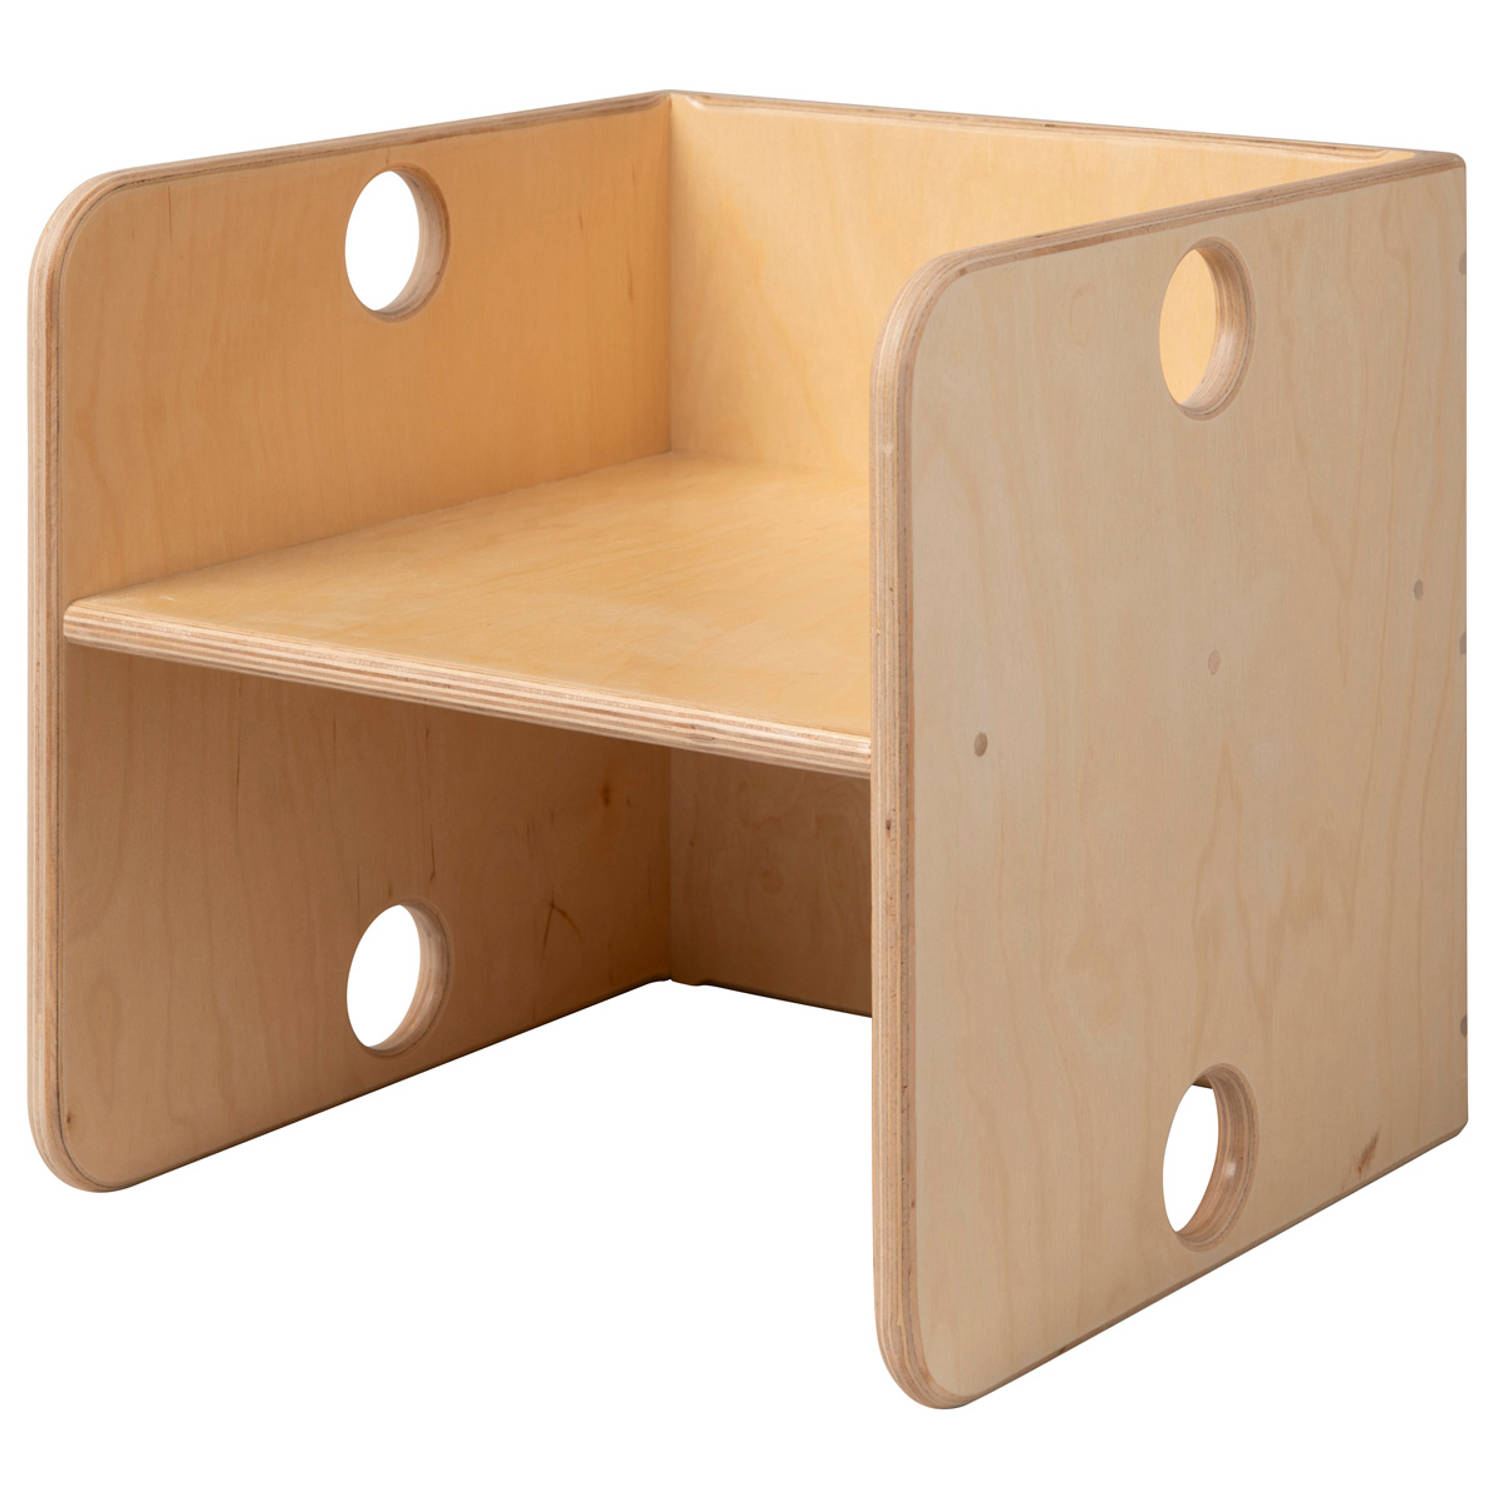 Van Dijk Toys houten kubusstoel / kinderstoel voor kleuters - Naturel (Kinderopvang kwaliteit)